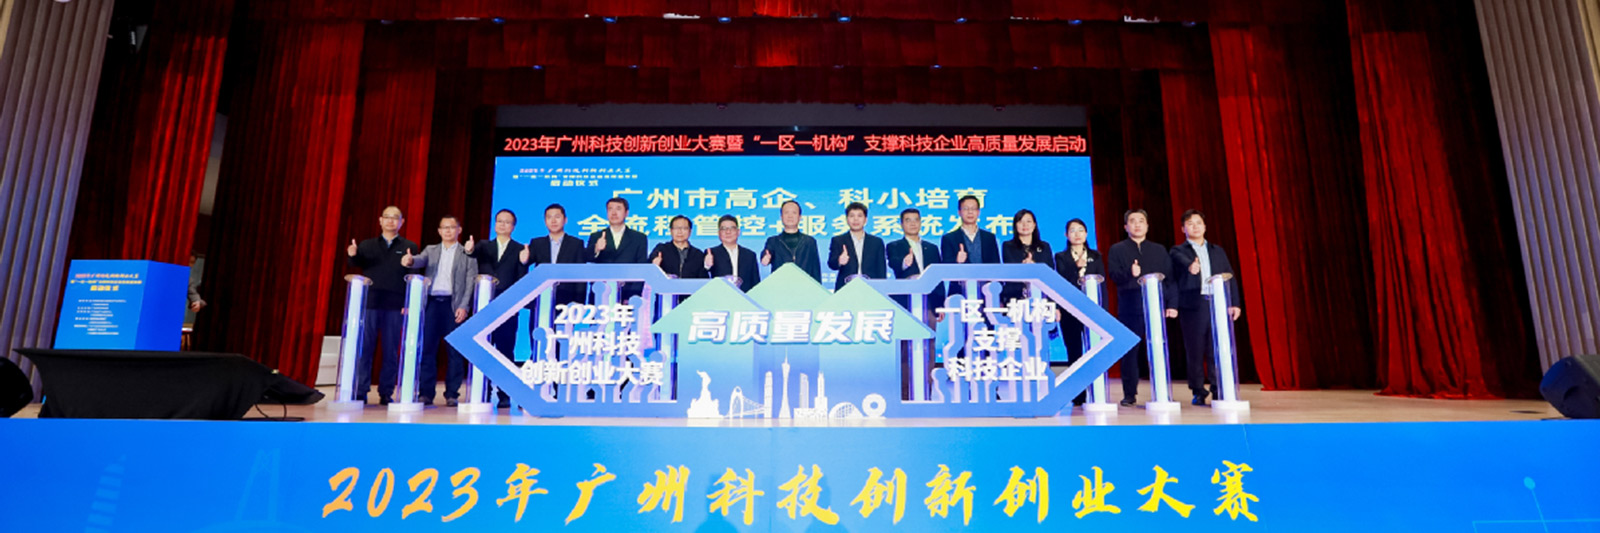 第十二届中国创新创业大赛